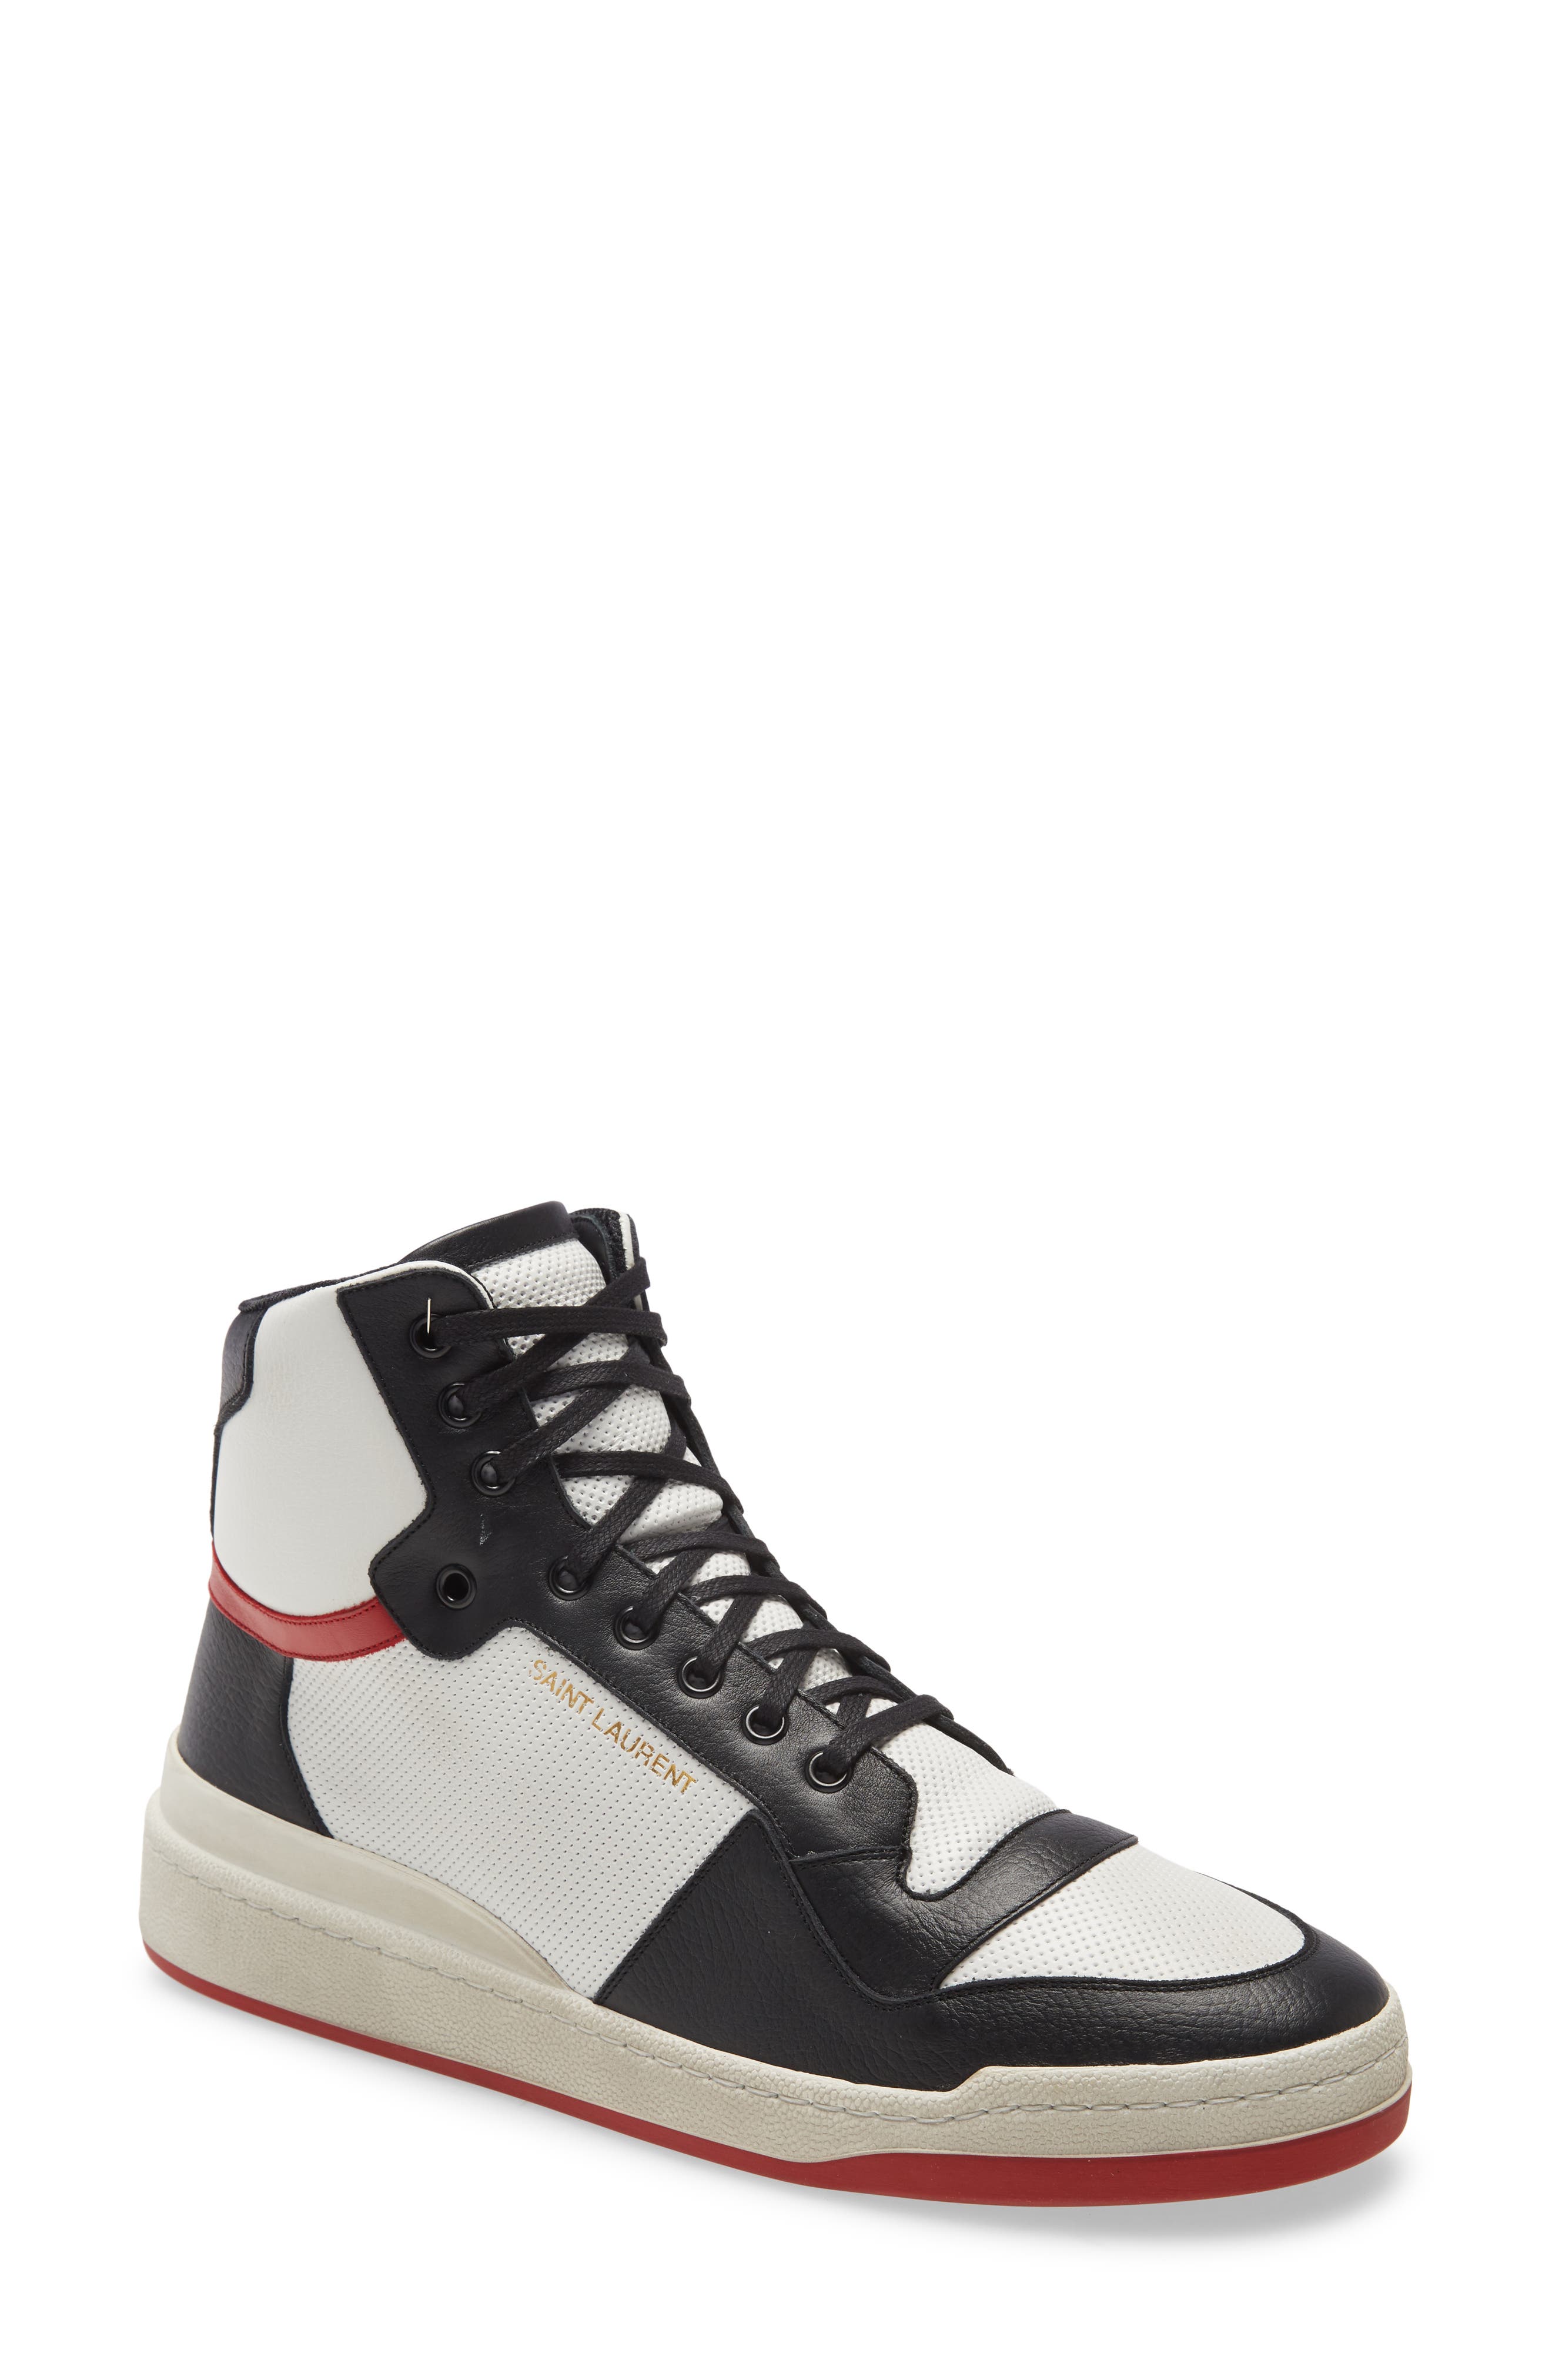 Men's Sneakers \u0026 Athletic Shoes | Nordstrom